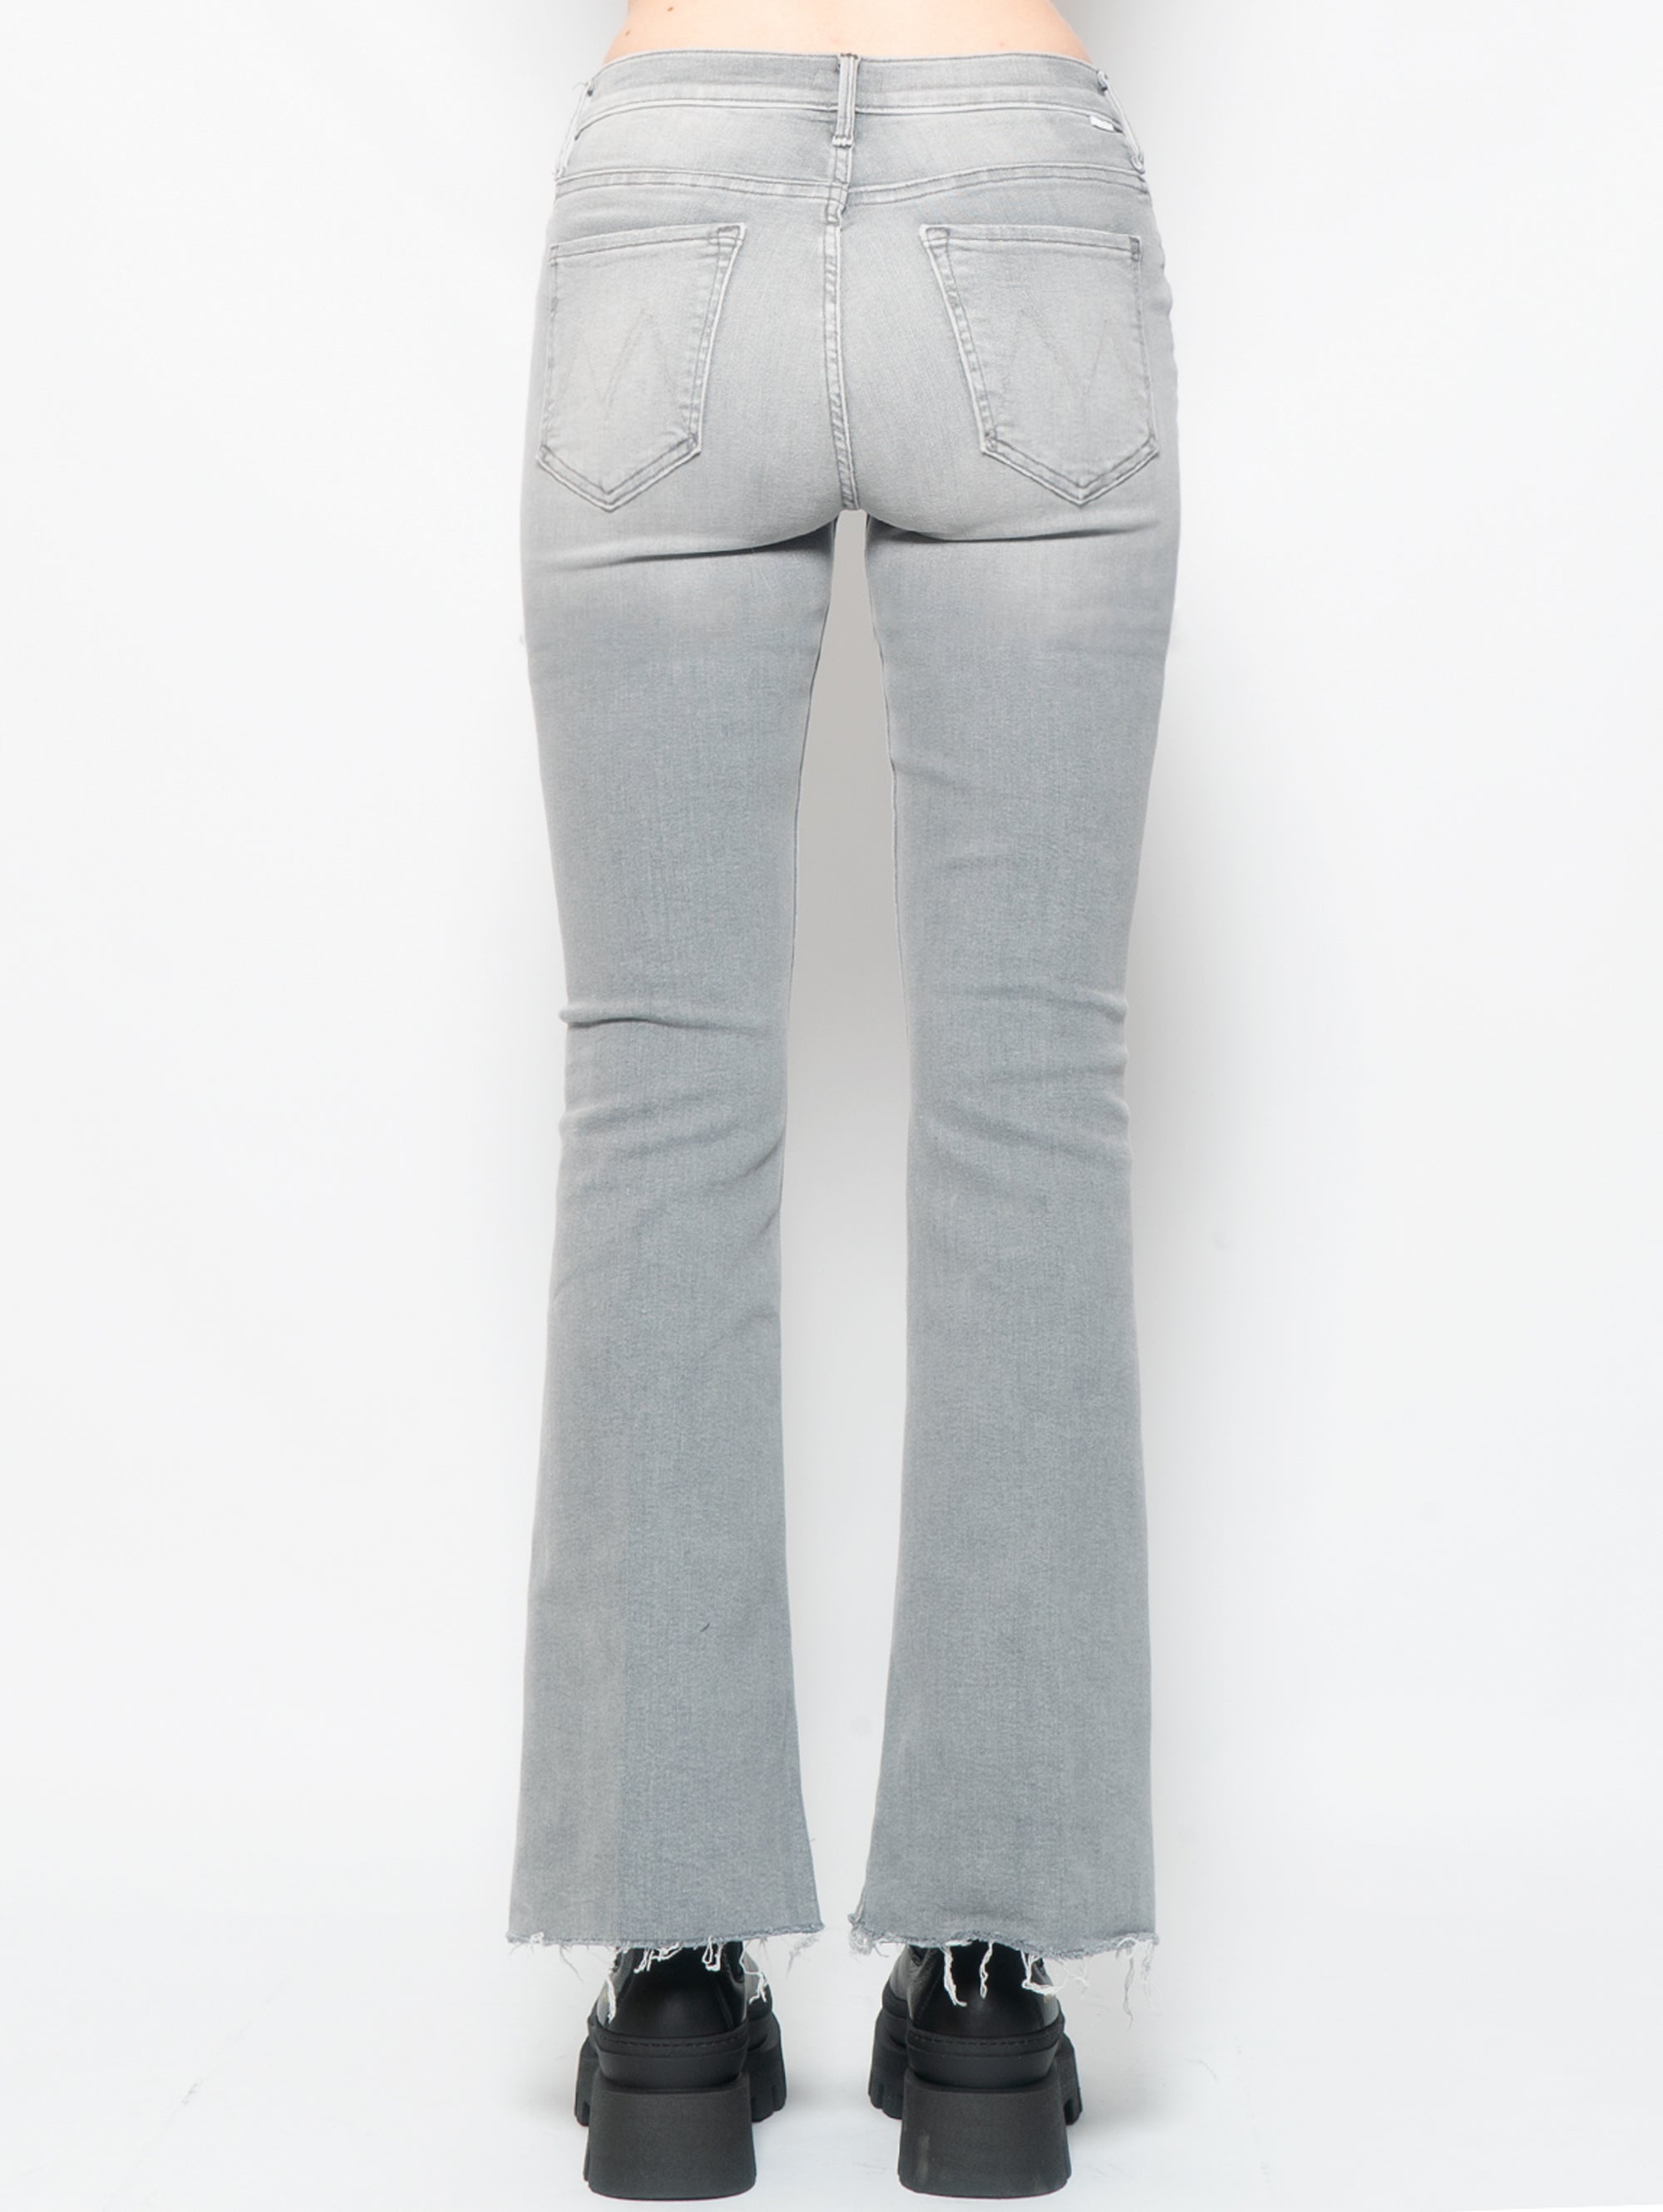 Jeans-Schlag mit grauem, ausgefranstem Saum